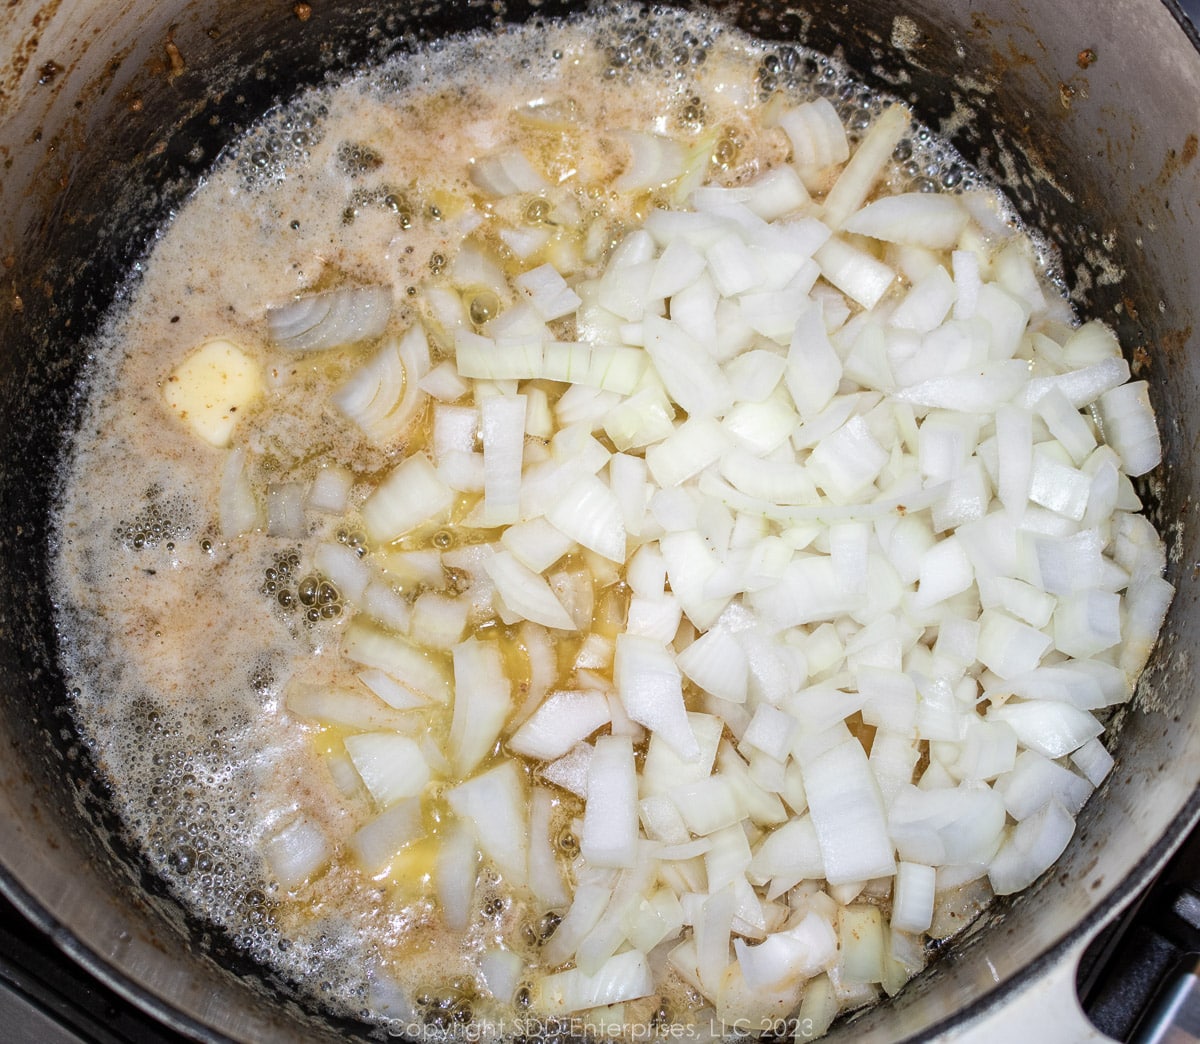 yellow onions sautéing in butter